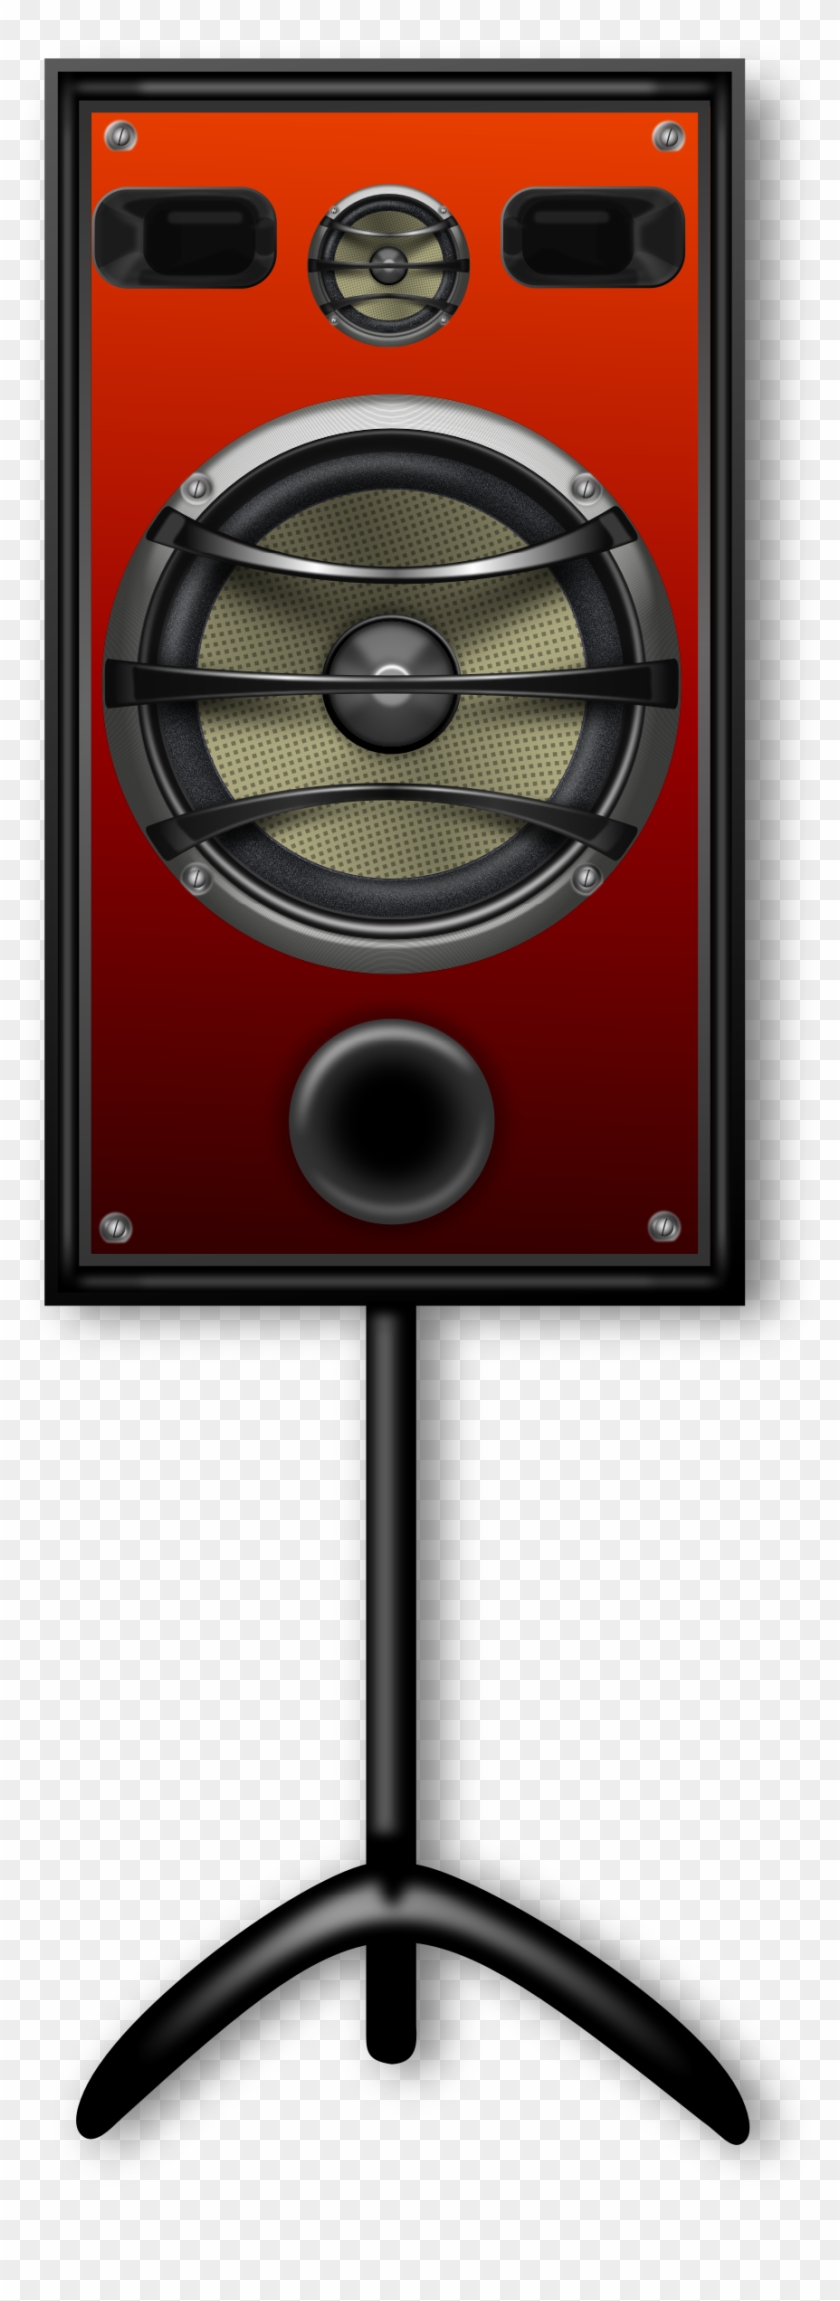 This Free Icons Png Design Of Studio Speaker 2 Orange Clipart #1827064